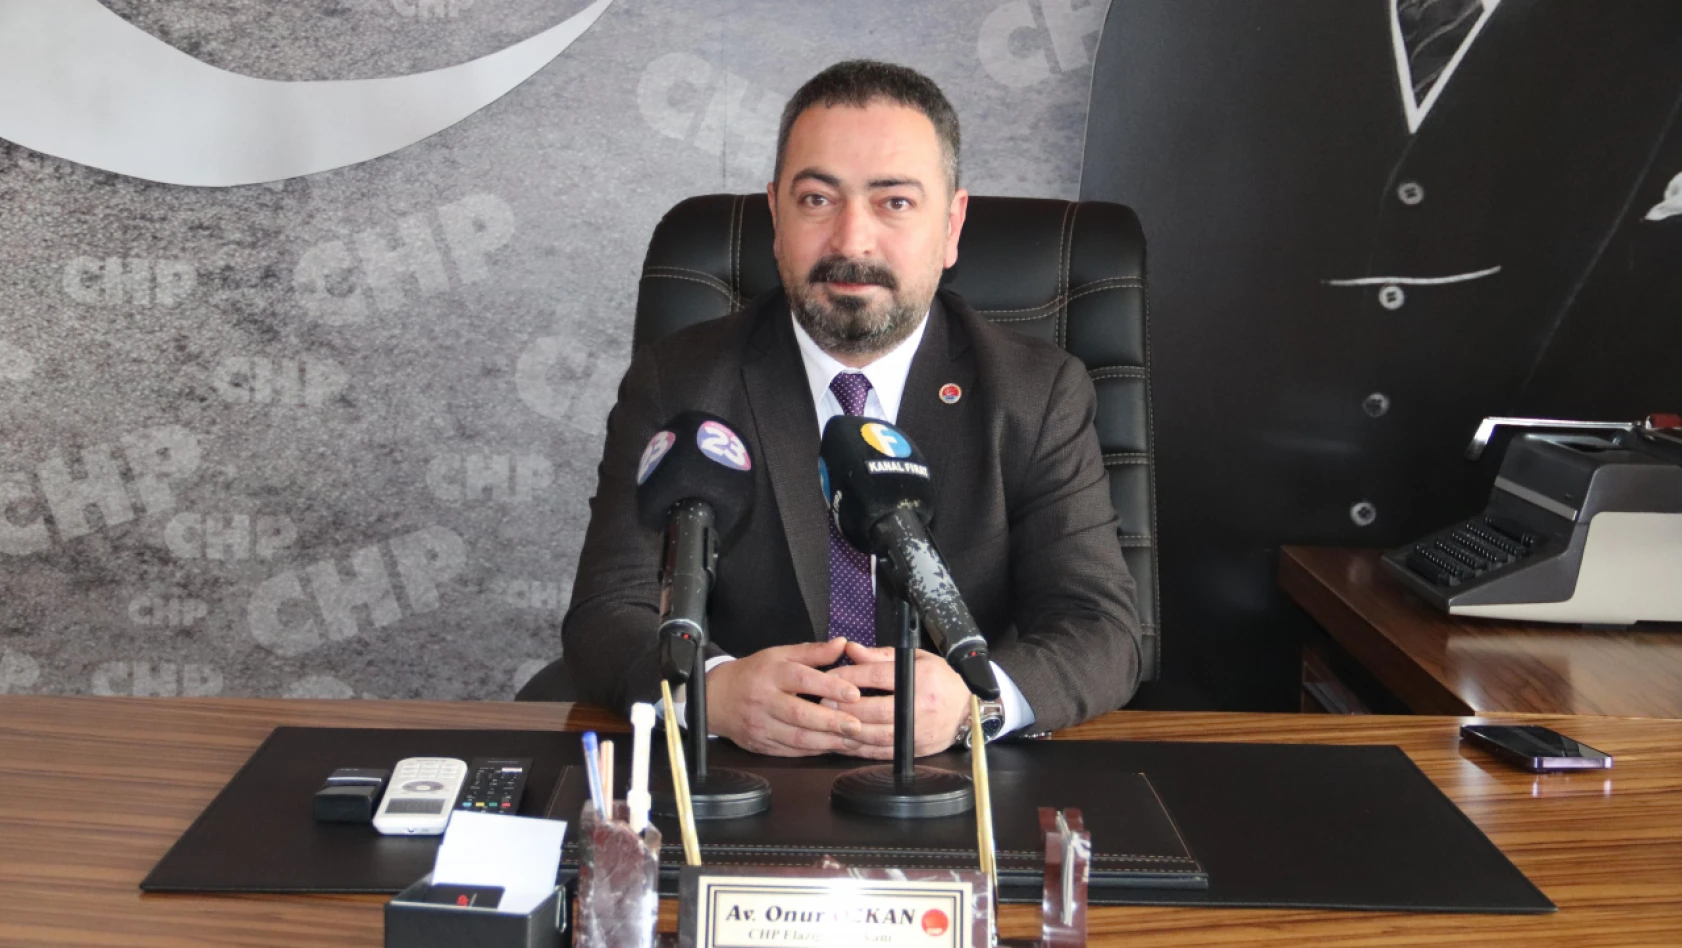 Başkan Özkan: Yasal Haklarımızın Gasp Edilmesine Müsaade Etmeyeceğiz